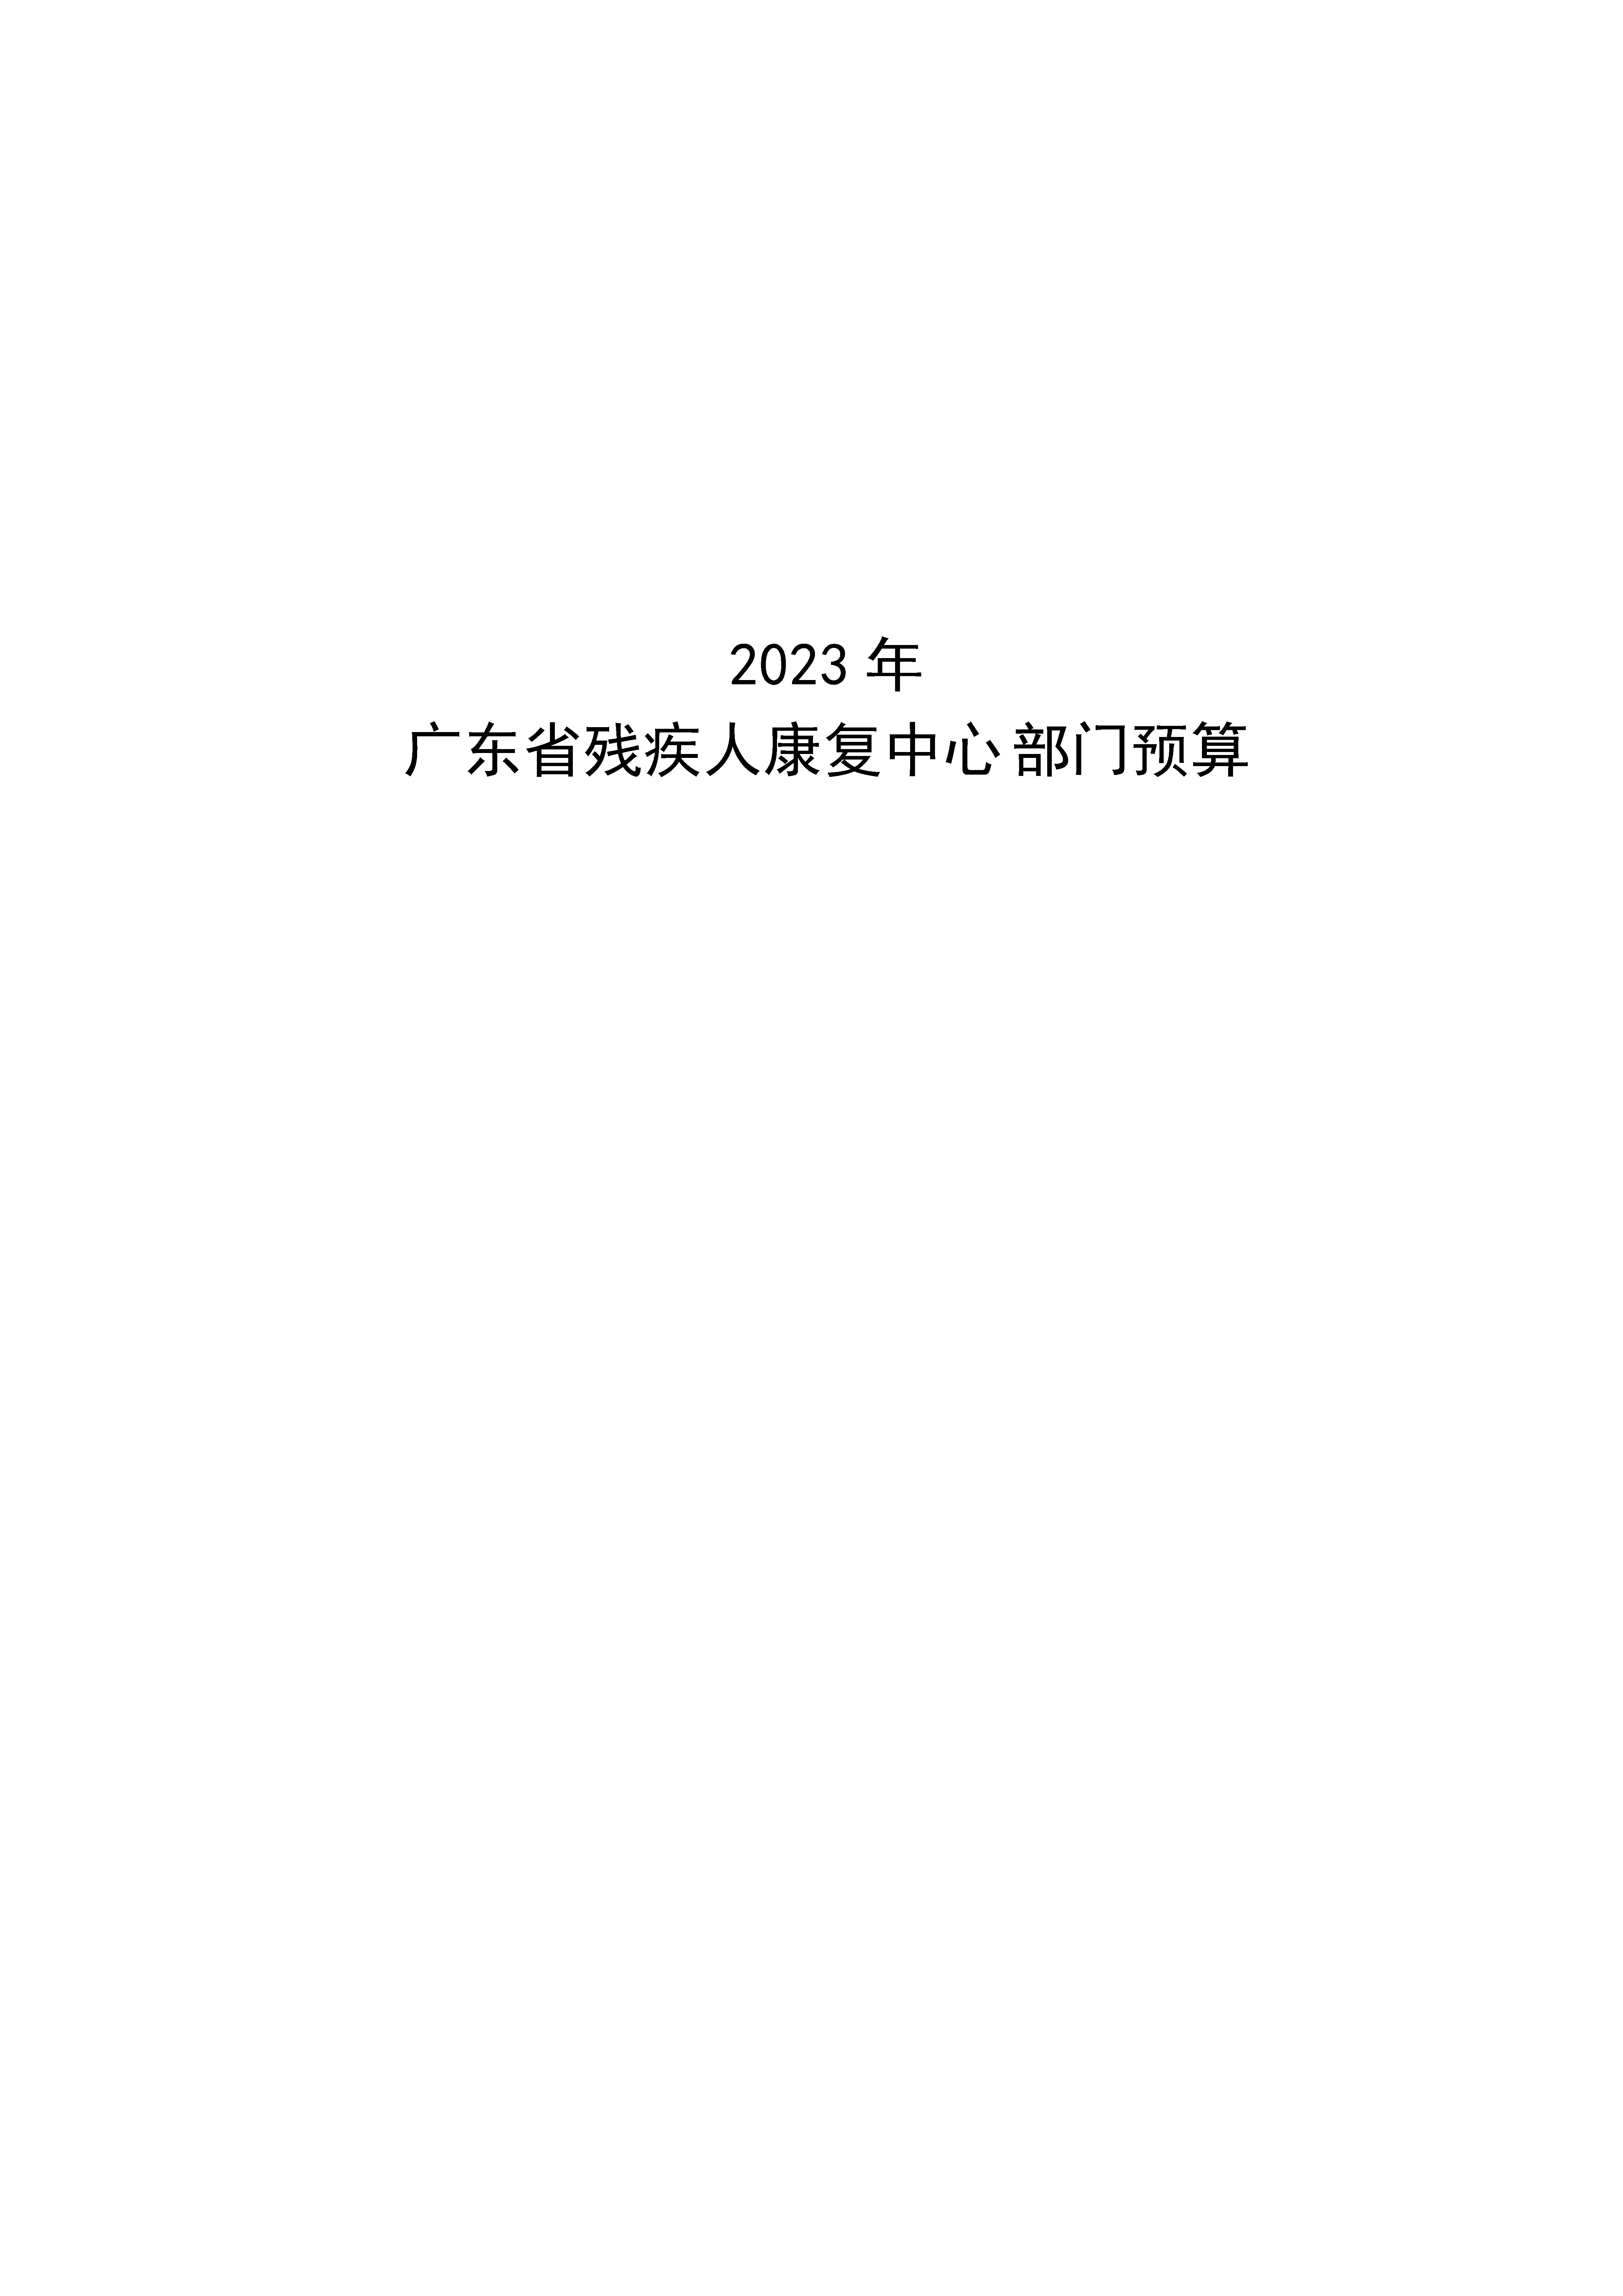 2023年广东省残疾人康复中心部门预算_页面_01.jpg